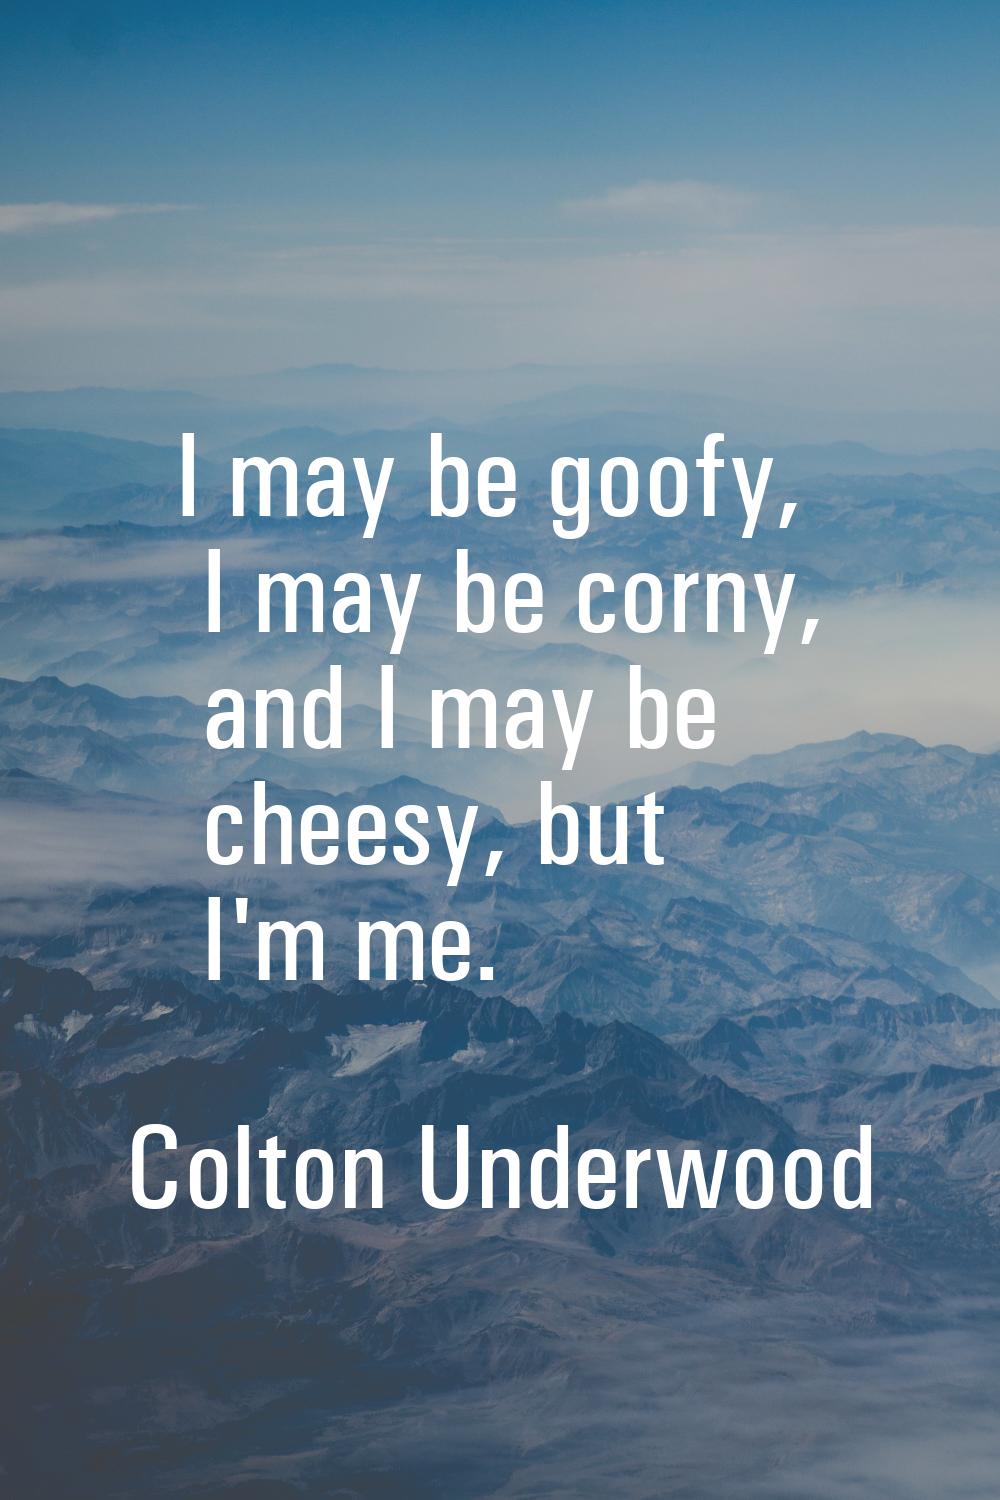 I may be goofy, I may be corny, and I may be cheesy, but I'm me.